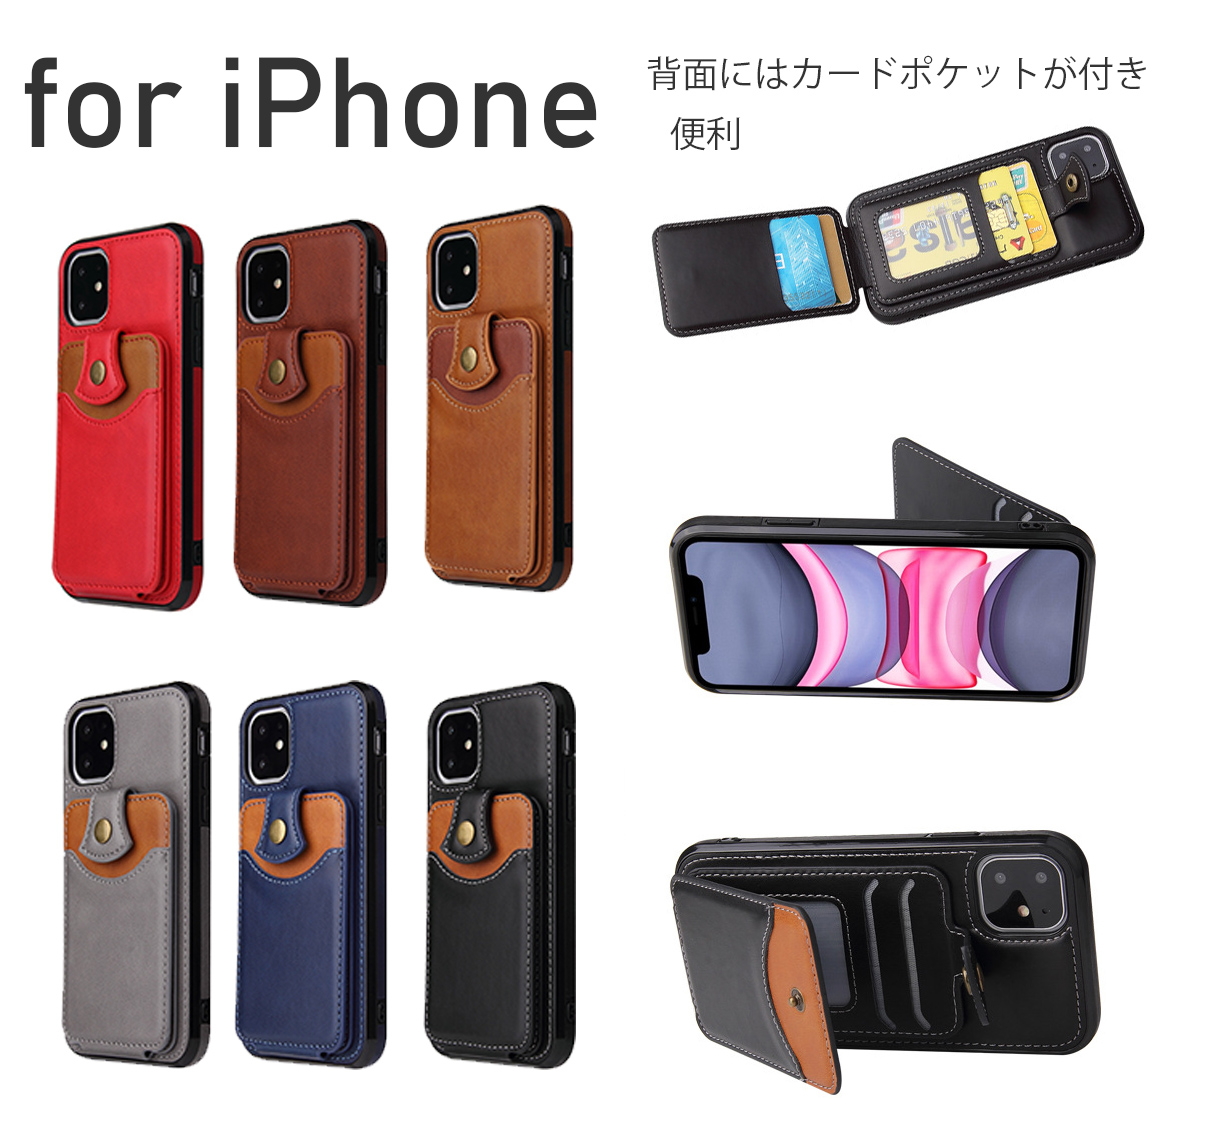 iPhone 11 pro max アイフォン スマホケース iphoneケース ベーシック カードポケット 背面カード収納